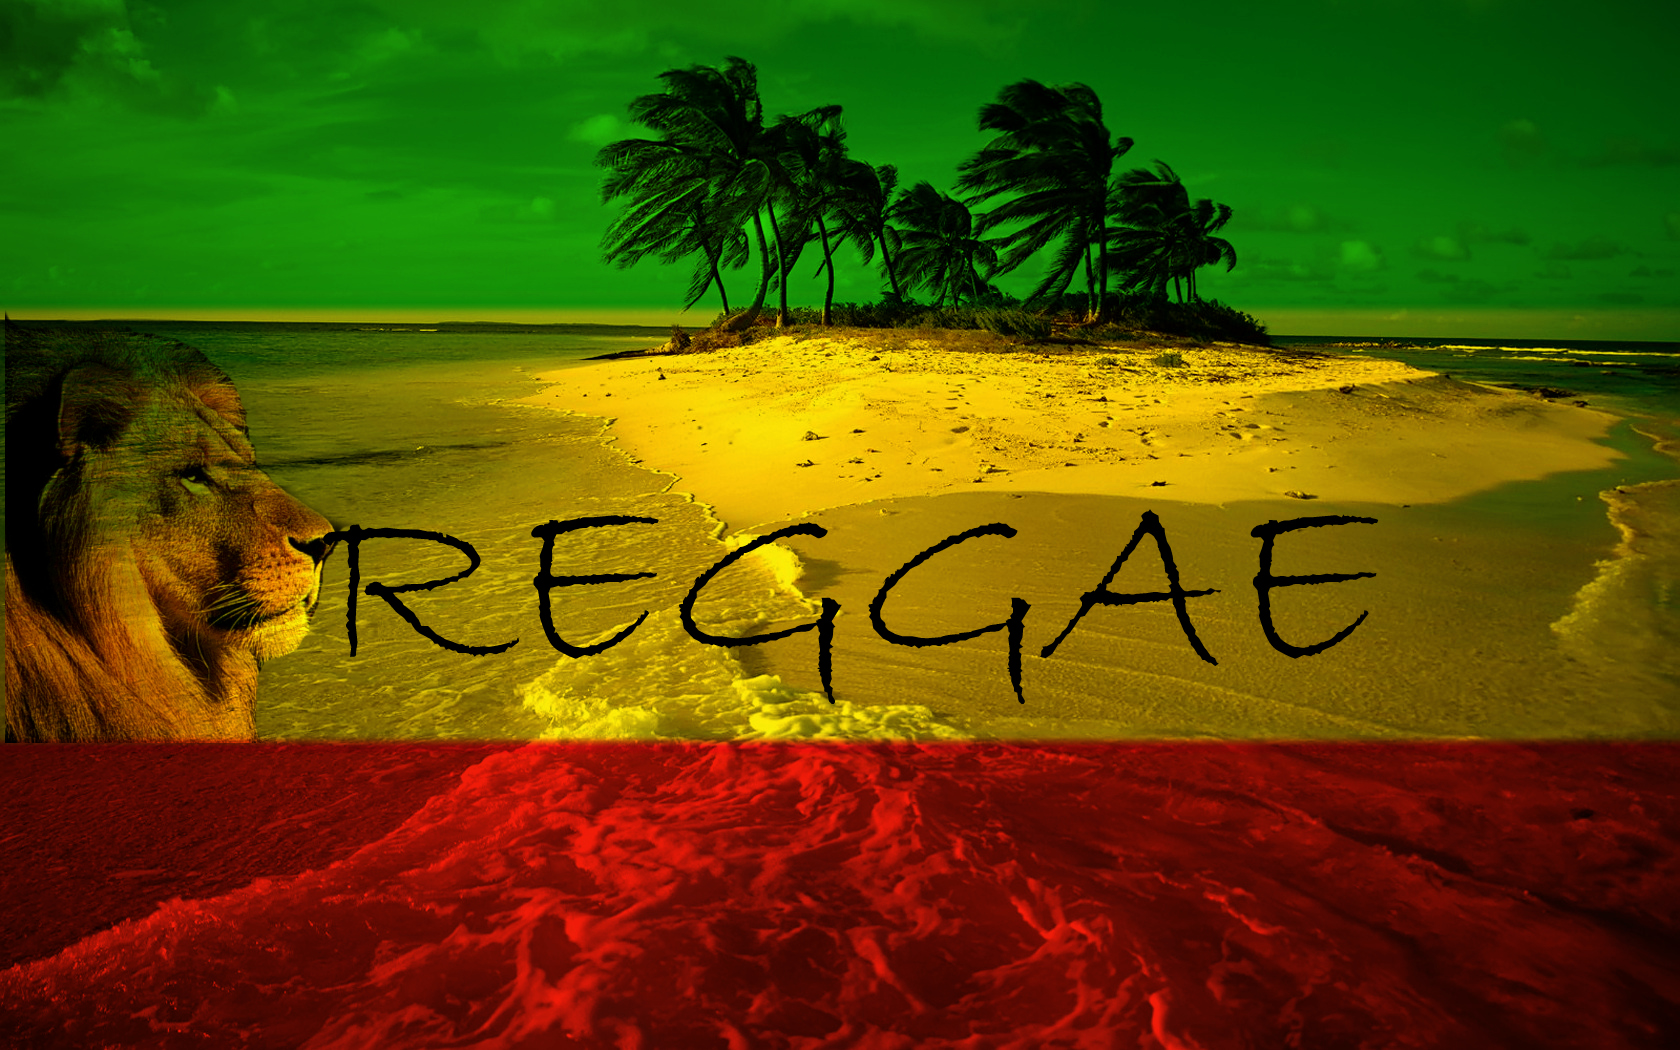 Reggae Lion Wallpaper